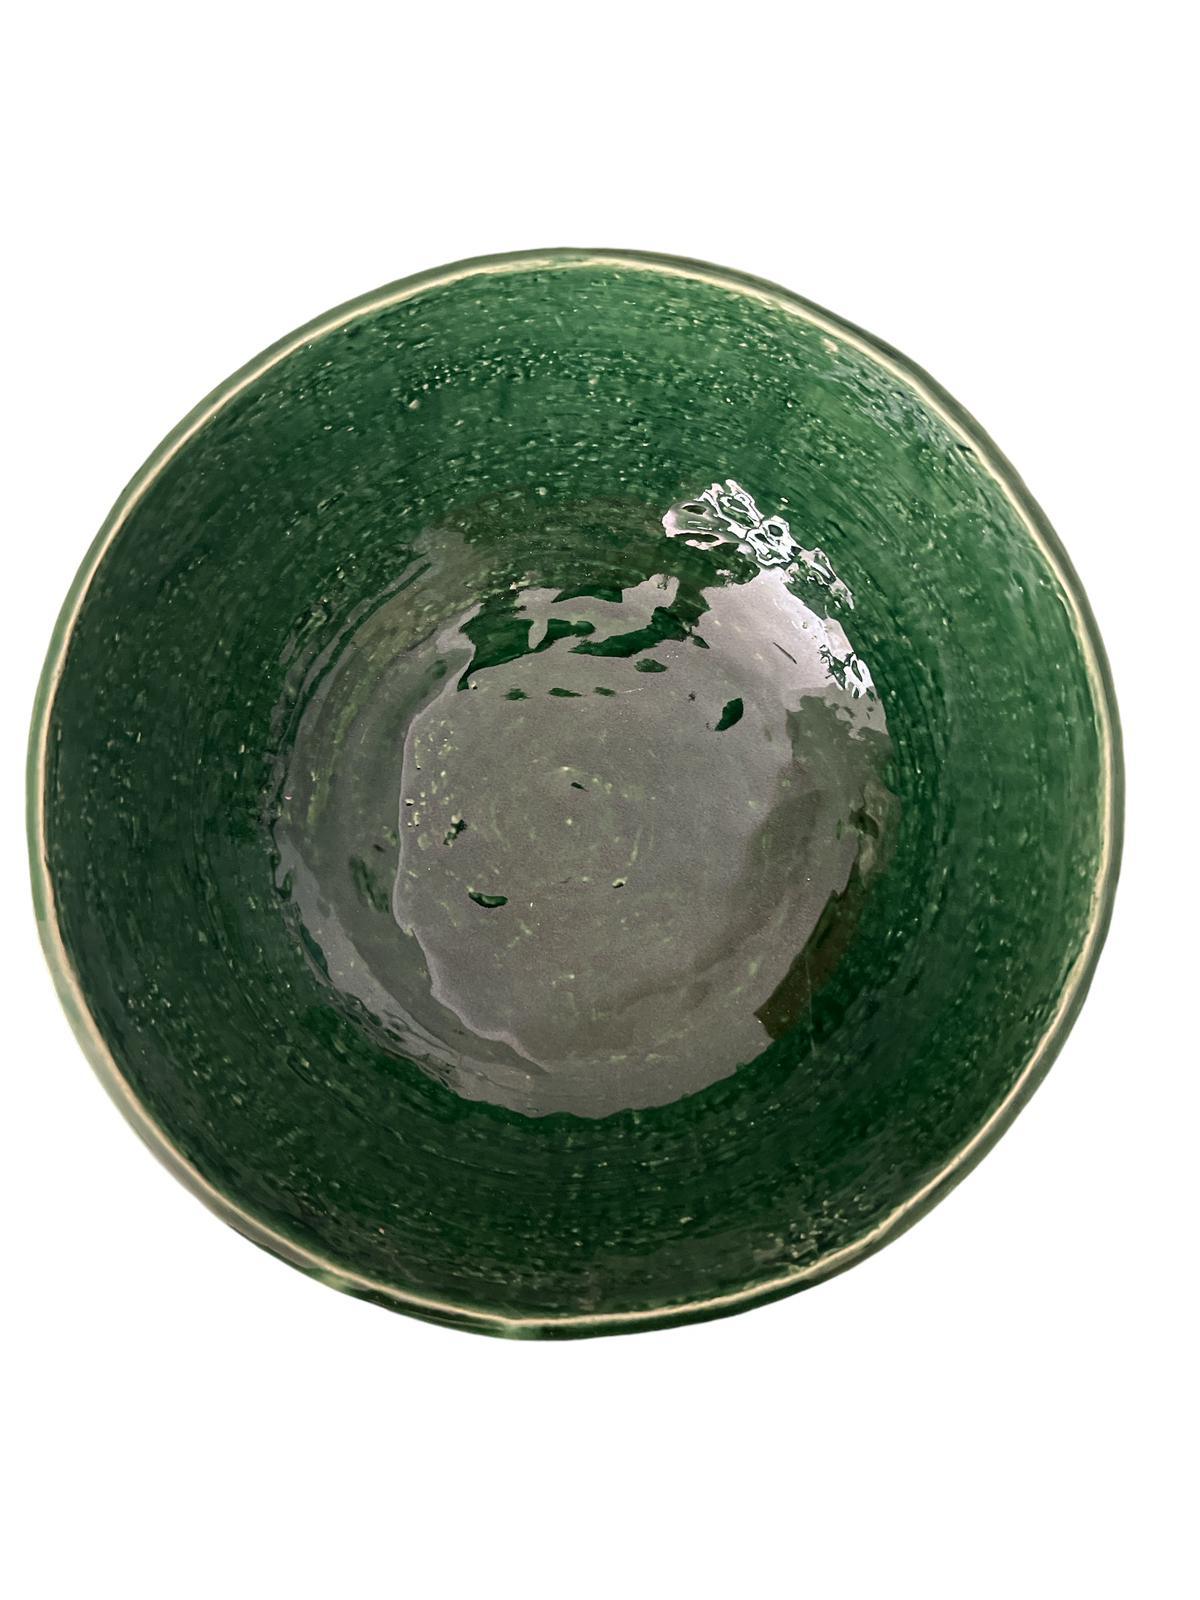 Ciotola / Insalatiera Verde Piccola 16 cm collezione Virginia Casa Ceramiche - MARIKA DE PAOLA - HOME DECOR